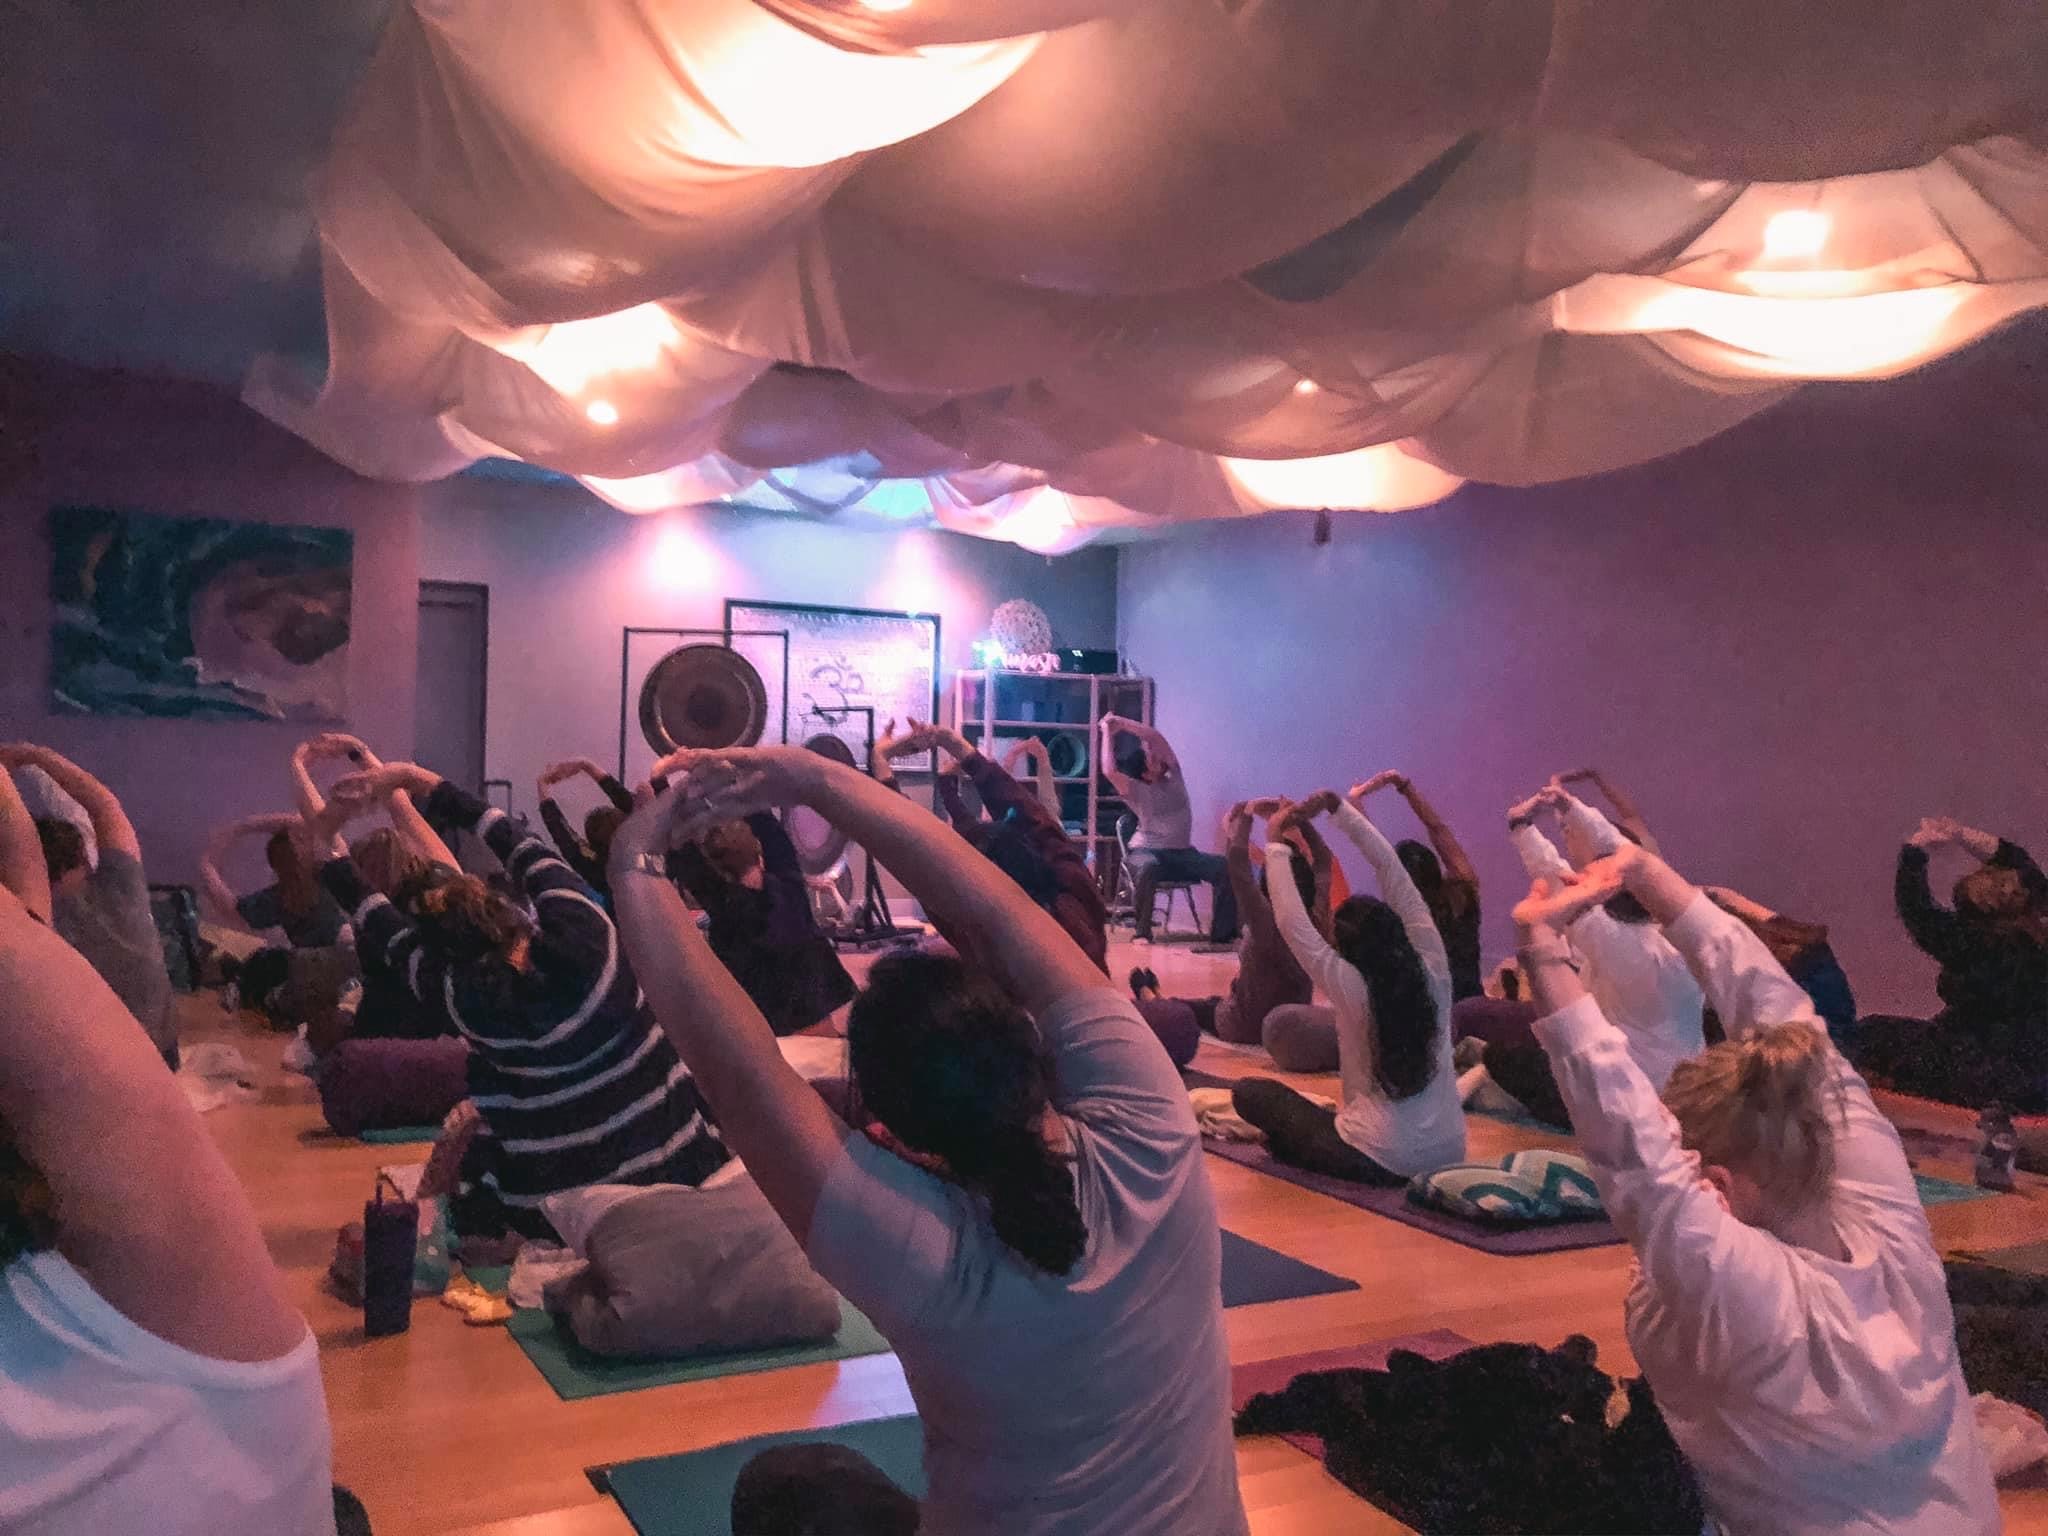 Arlington Yoga Center stretches